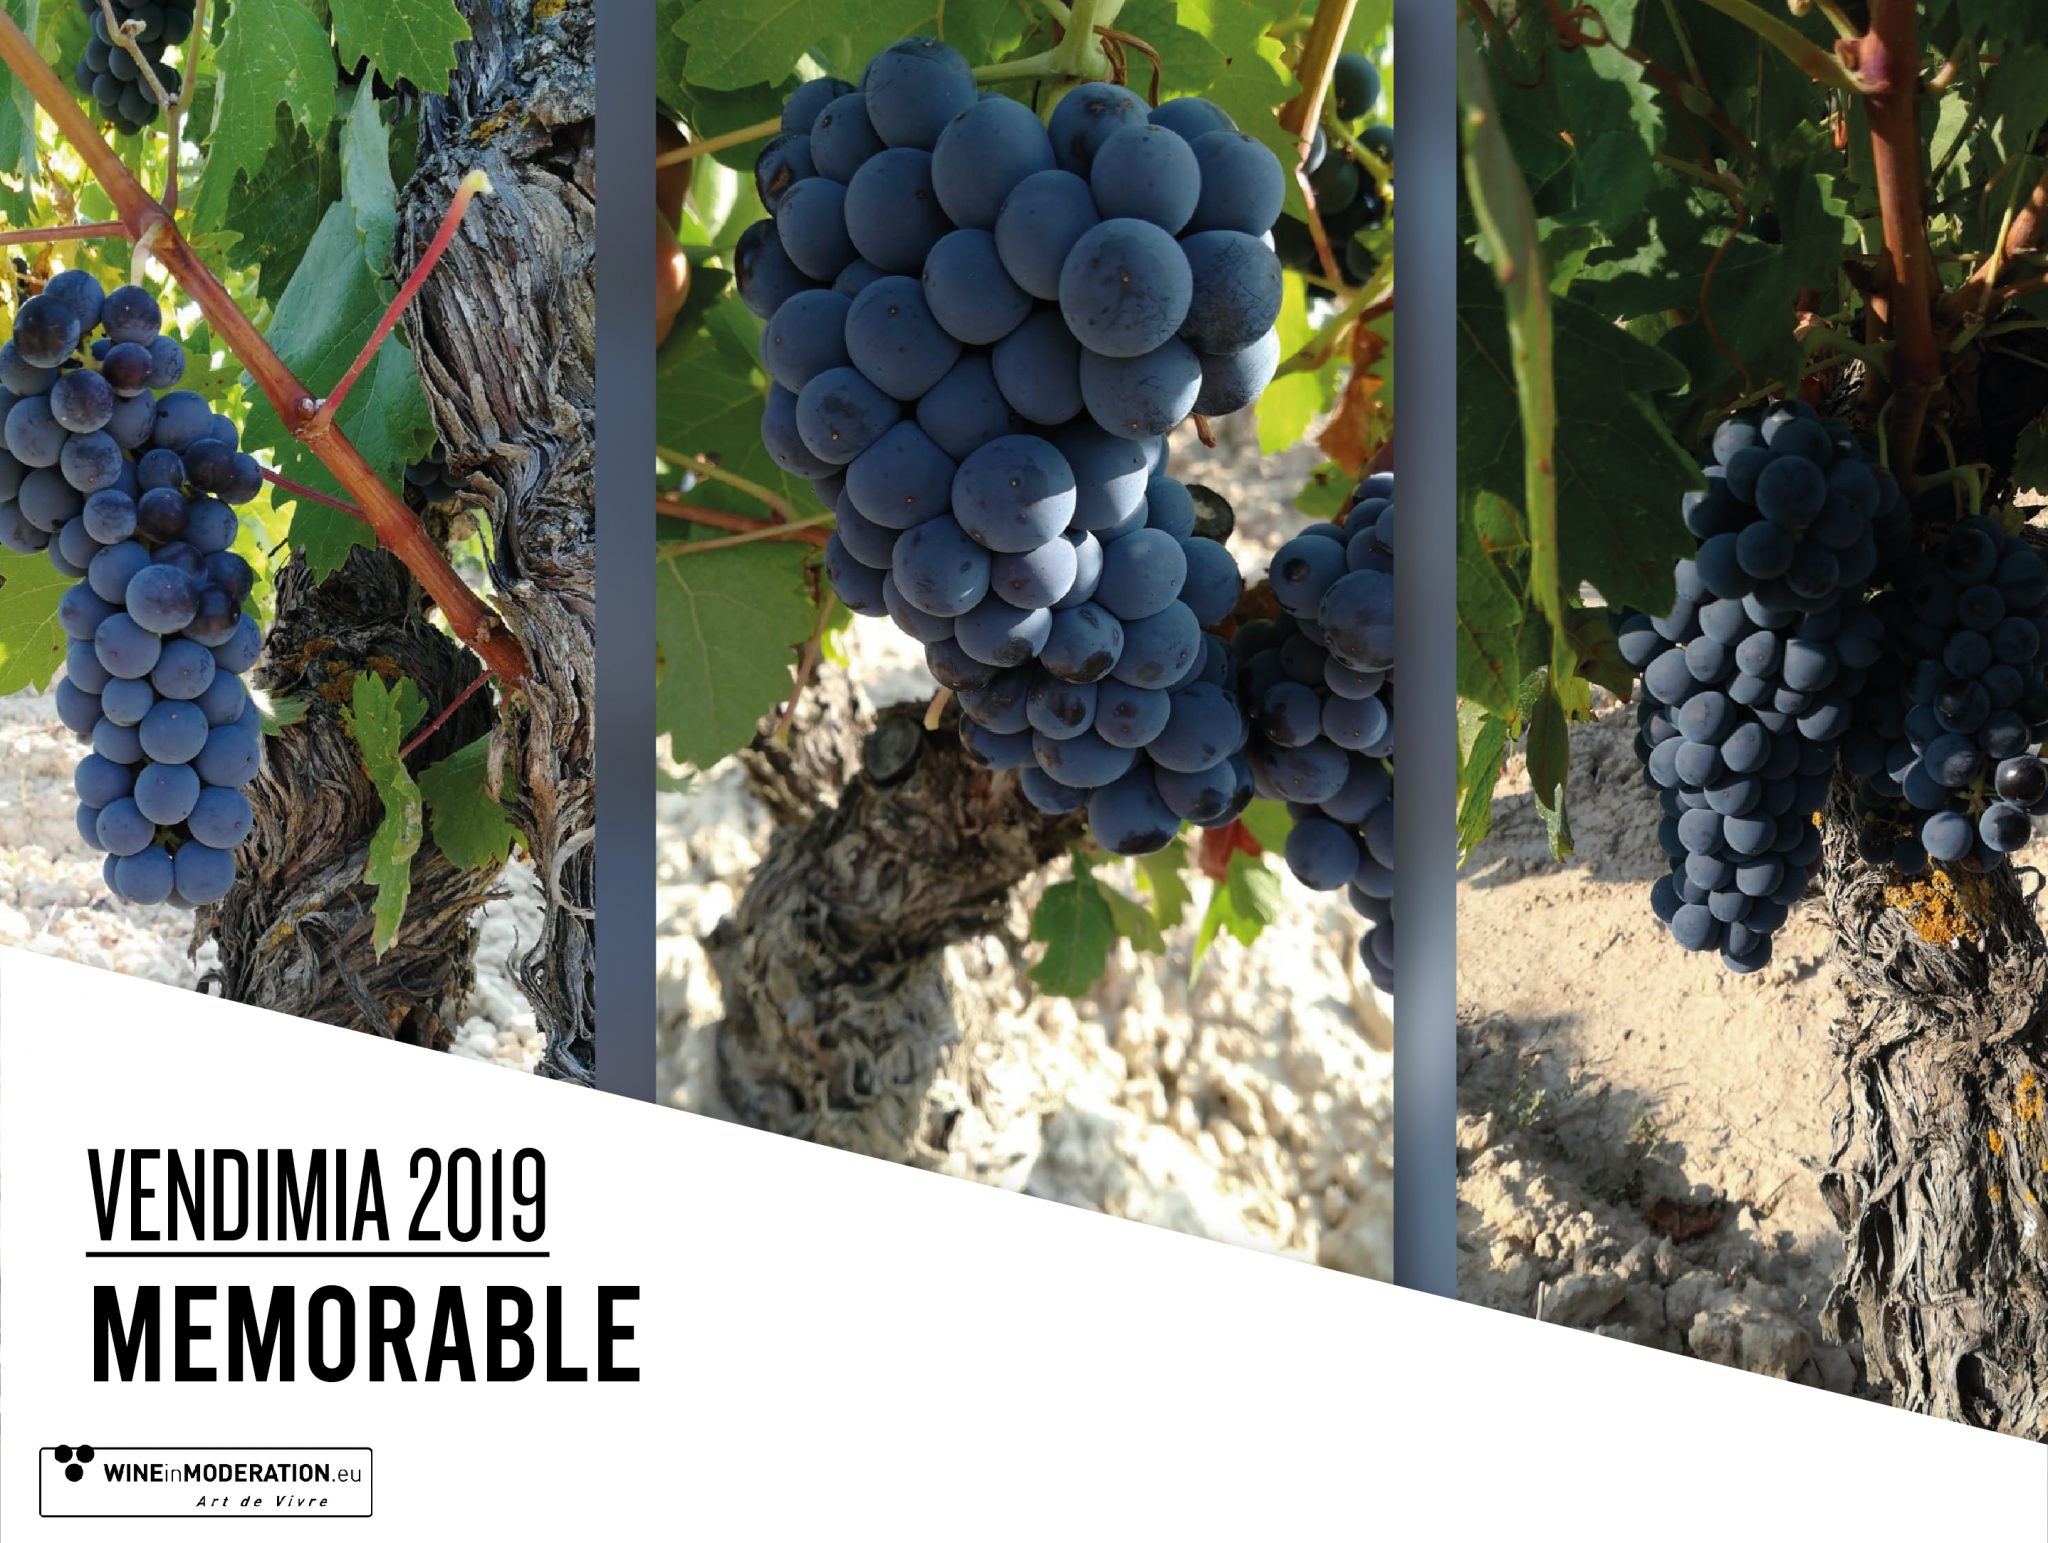 Vendimia Rioja 2019: Memorable